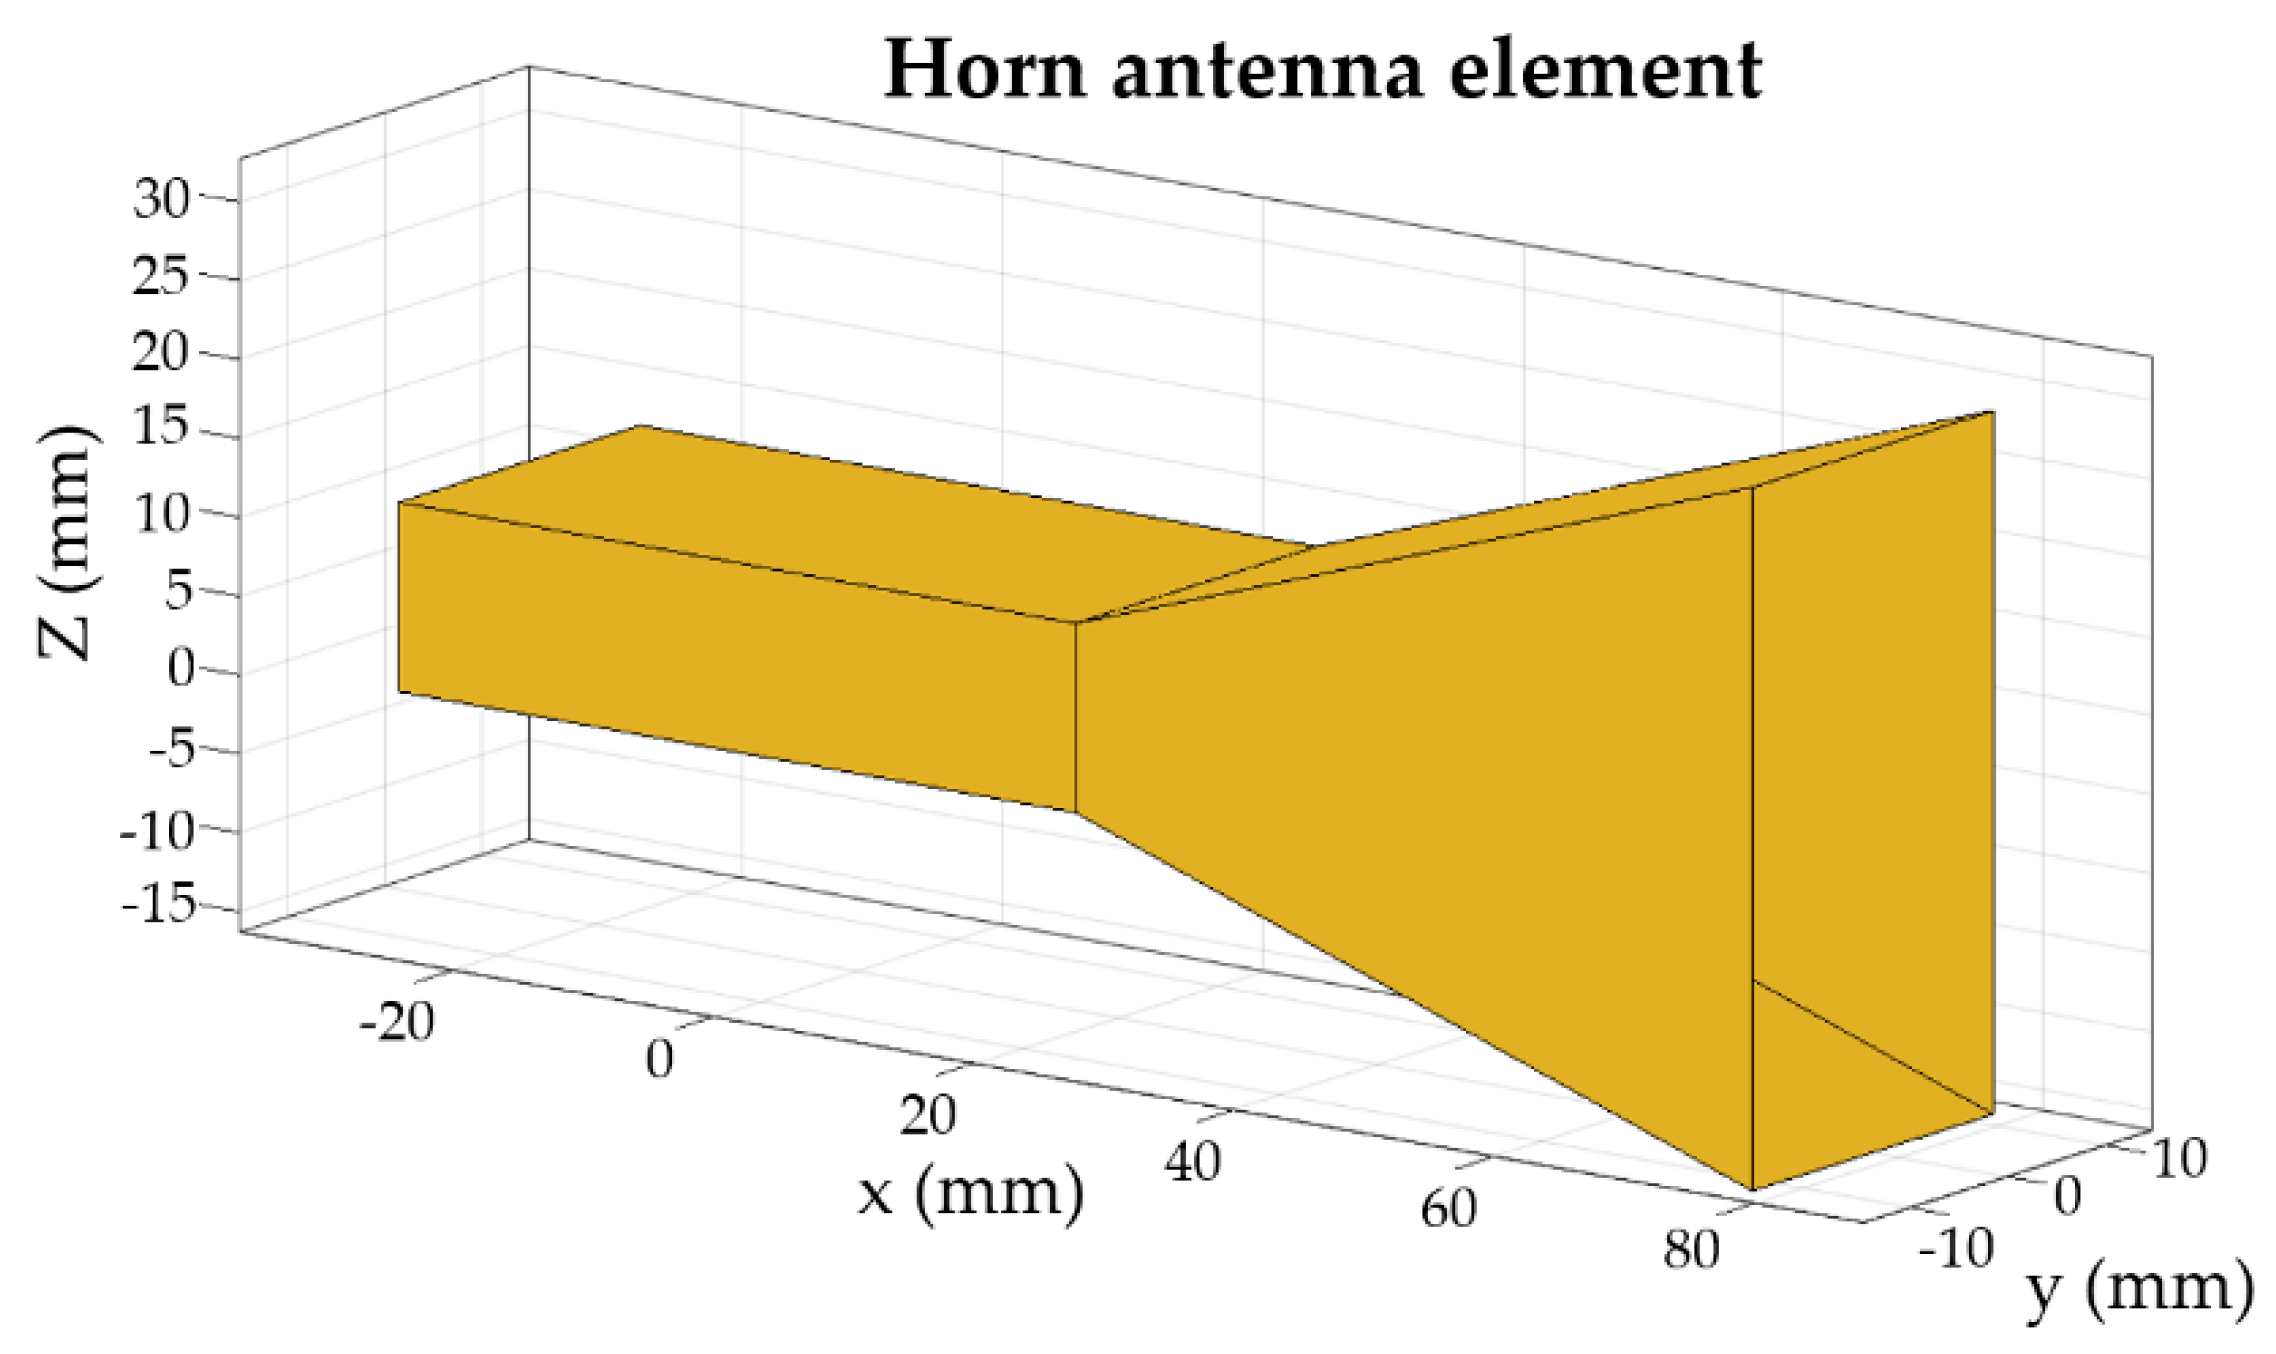 Horn antenna